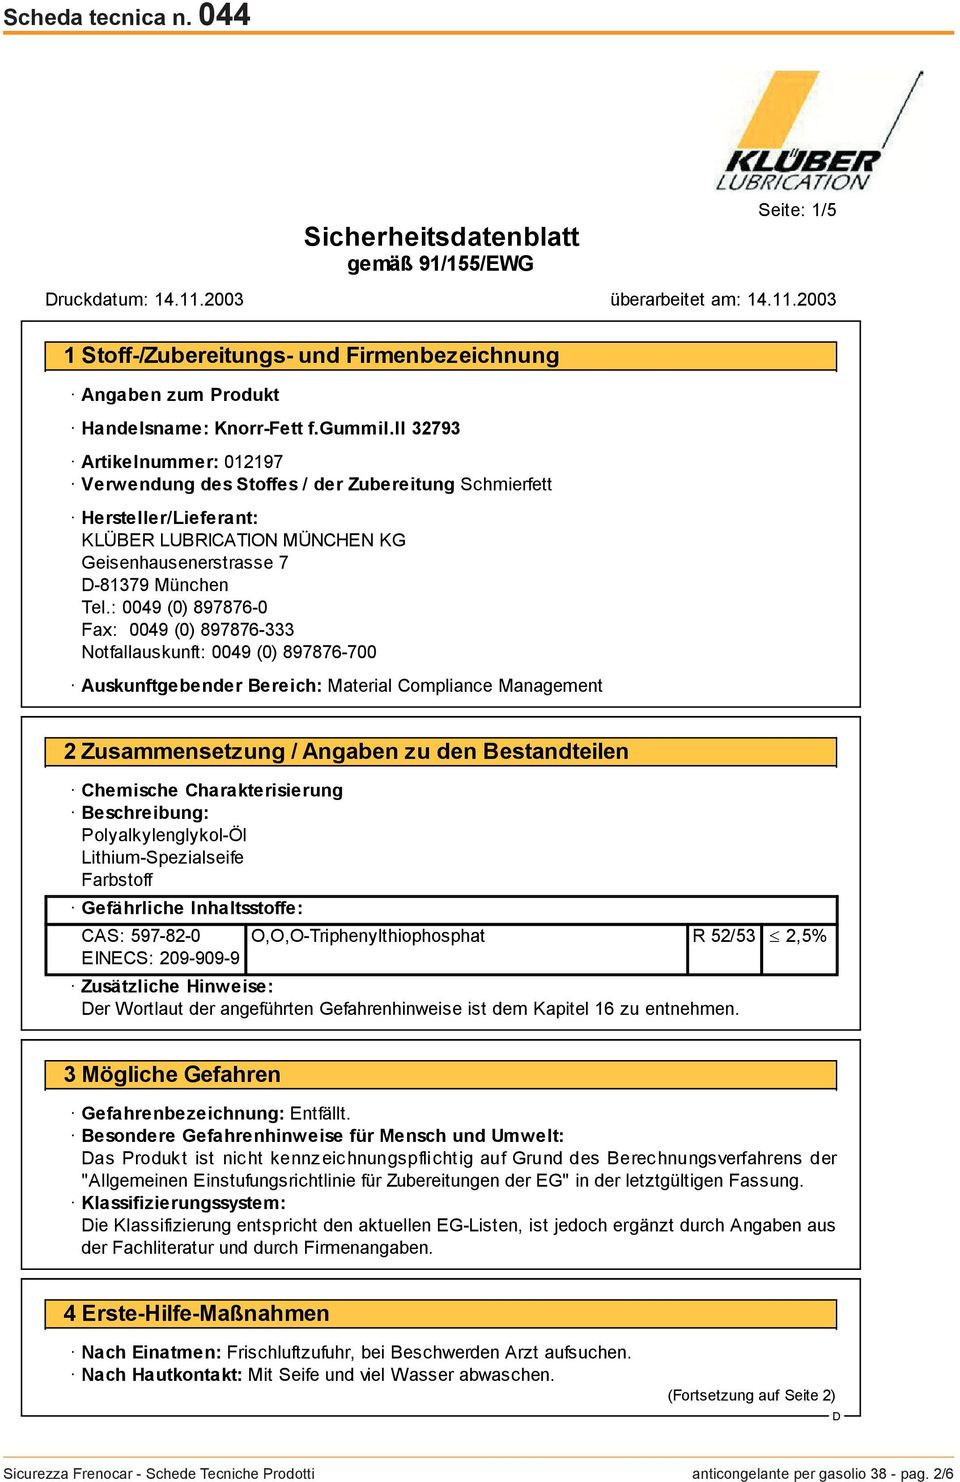 : 0049 (0) 897876-0 Fax: 0049 (0) 897876-333 Notfallauskunft: 0049 (0) 897876-700 Auskunftgebender Bereich: Material Compliance Management 2 Zusammensetzung / Angaben zu den Bestandteilen Chemische